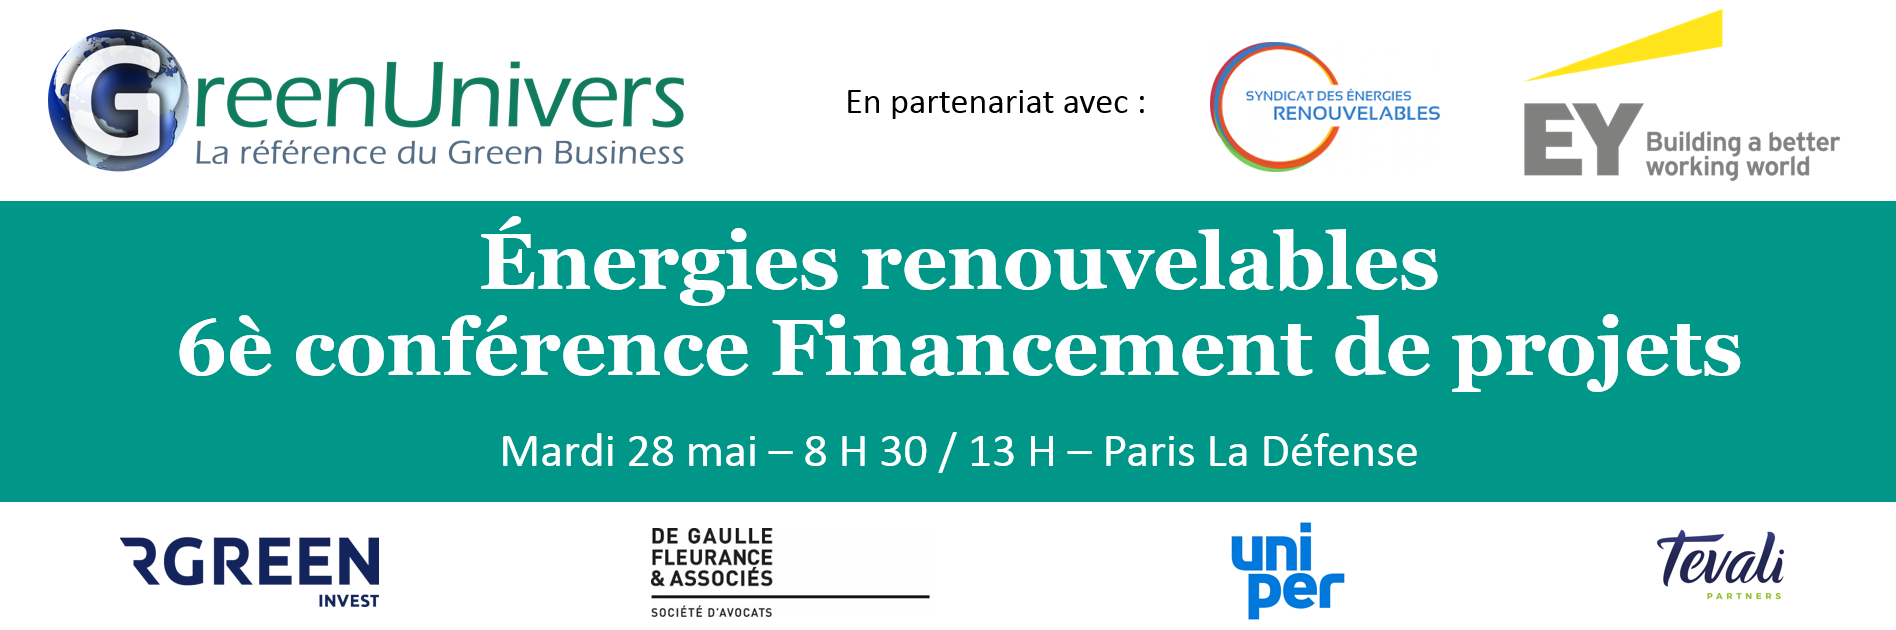 Énergies renouvelables 6e Conférence Financement de projets 28/05 - Paris